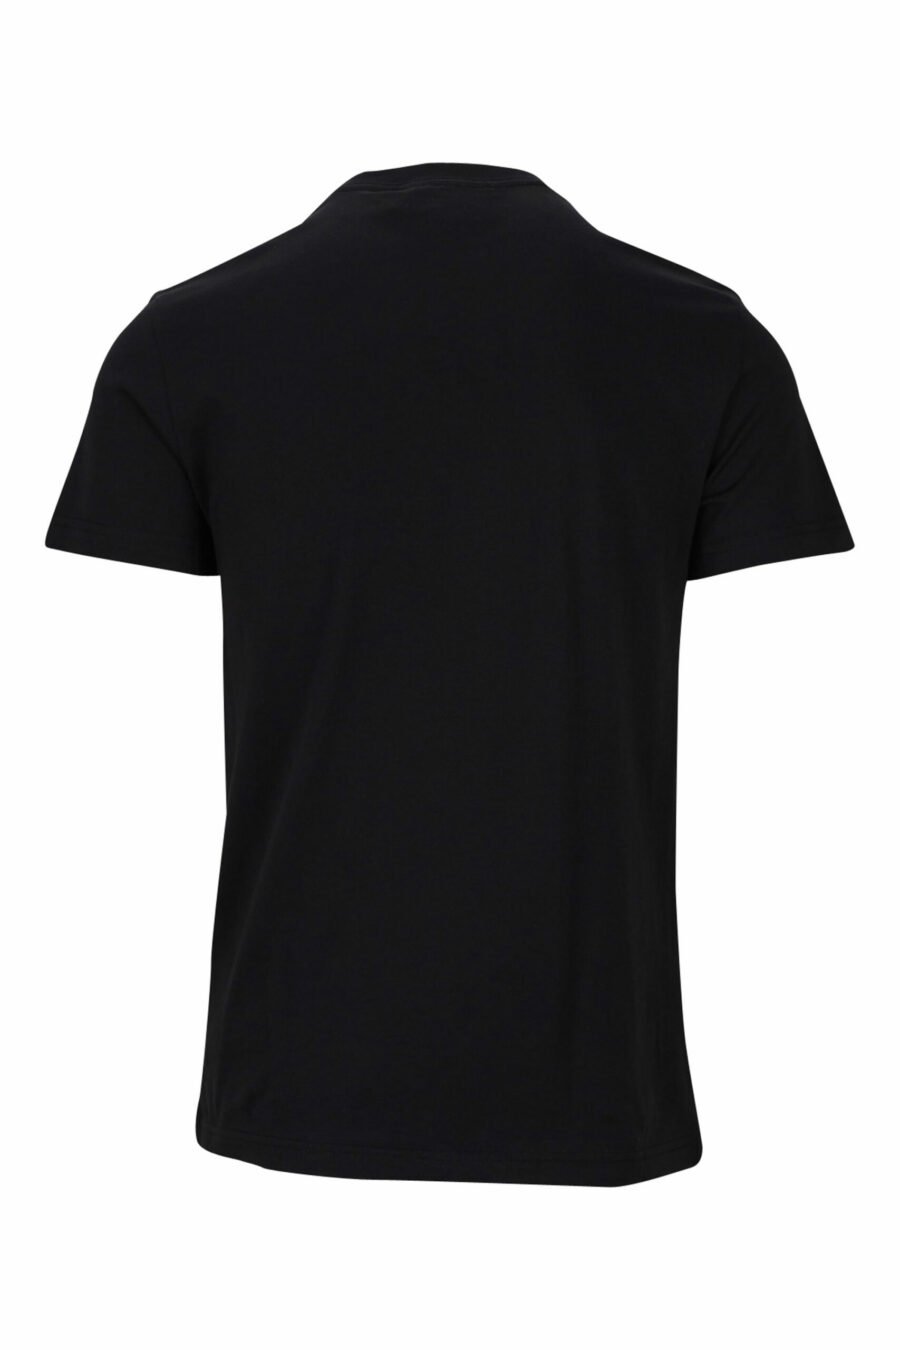 T-shirt noir avec mini-logo circulaire doré - 8052019468465 1 à l'échelle